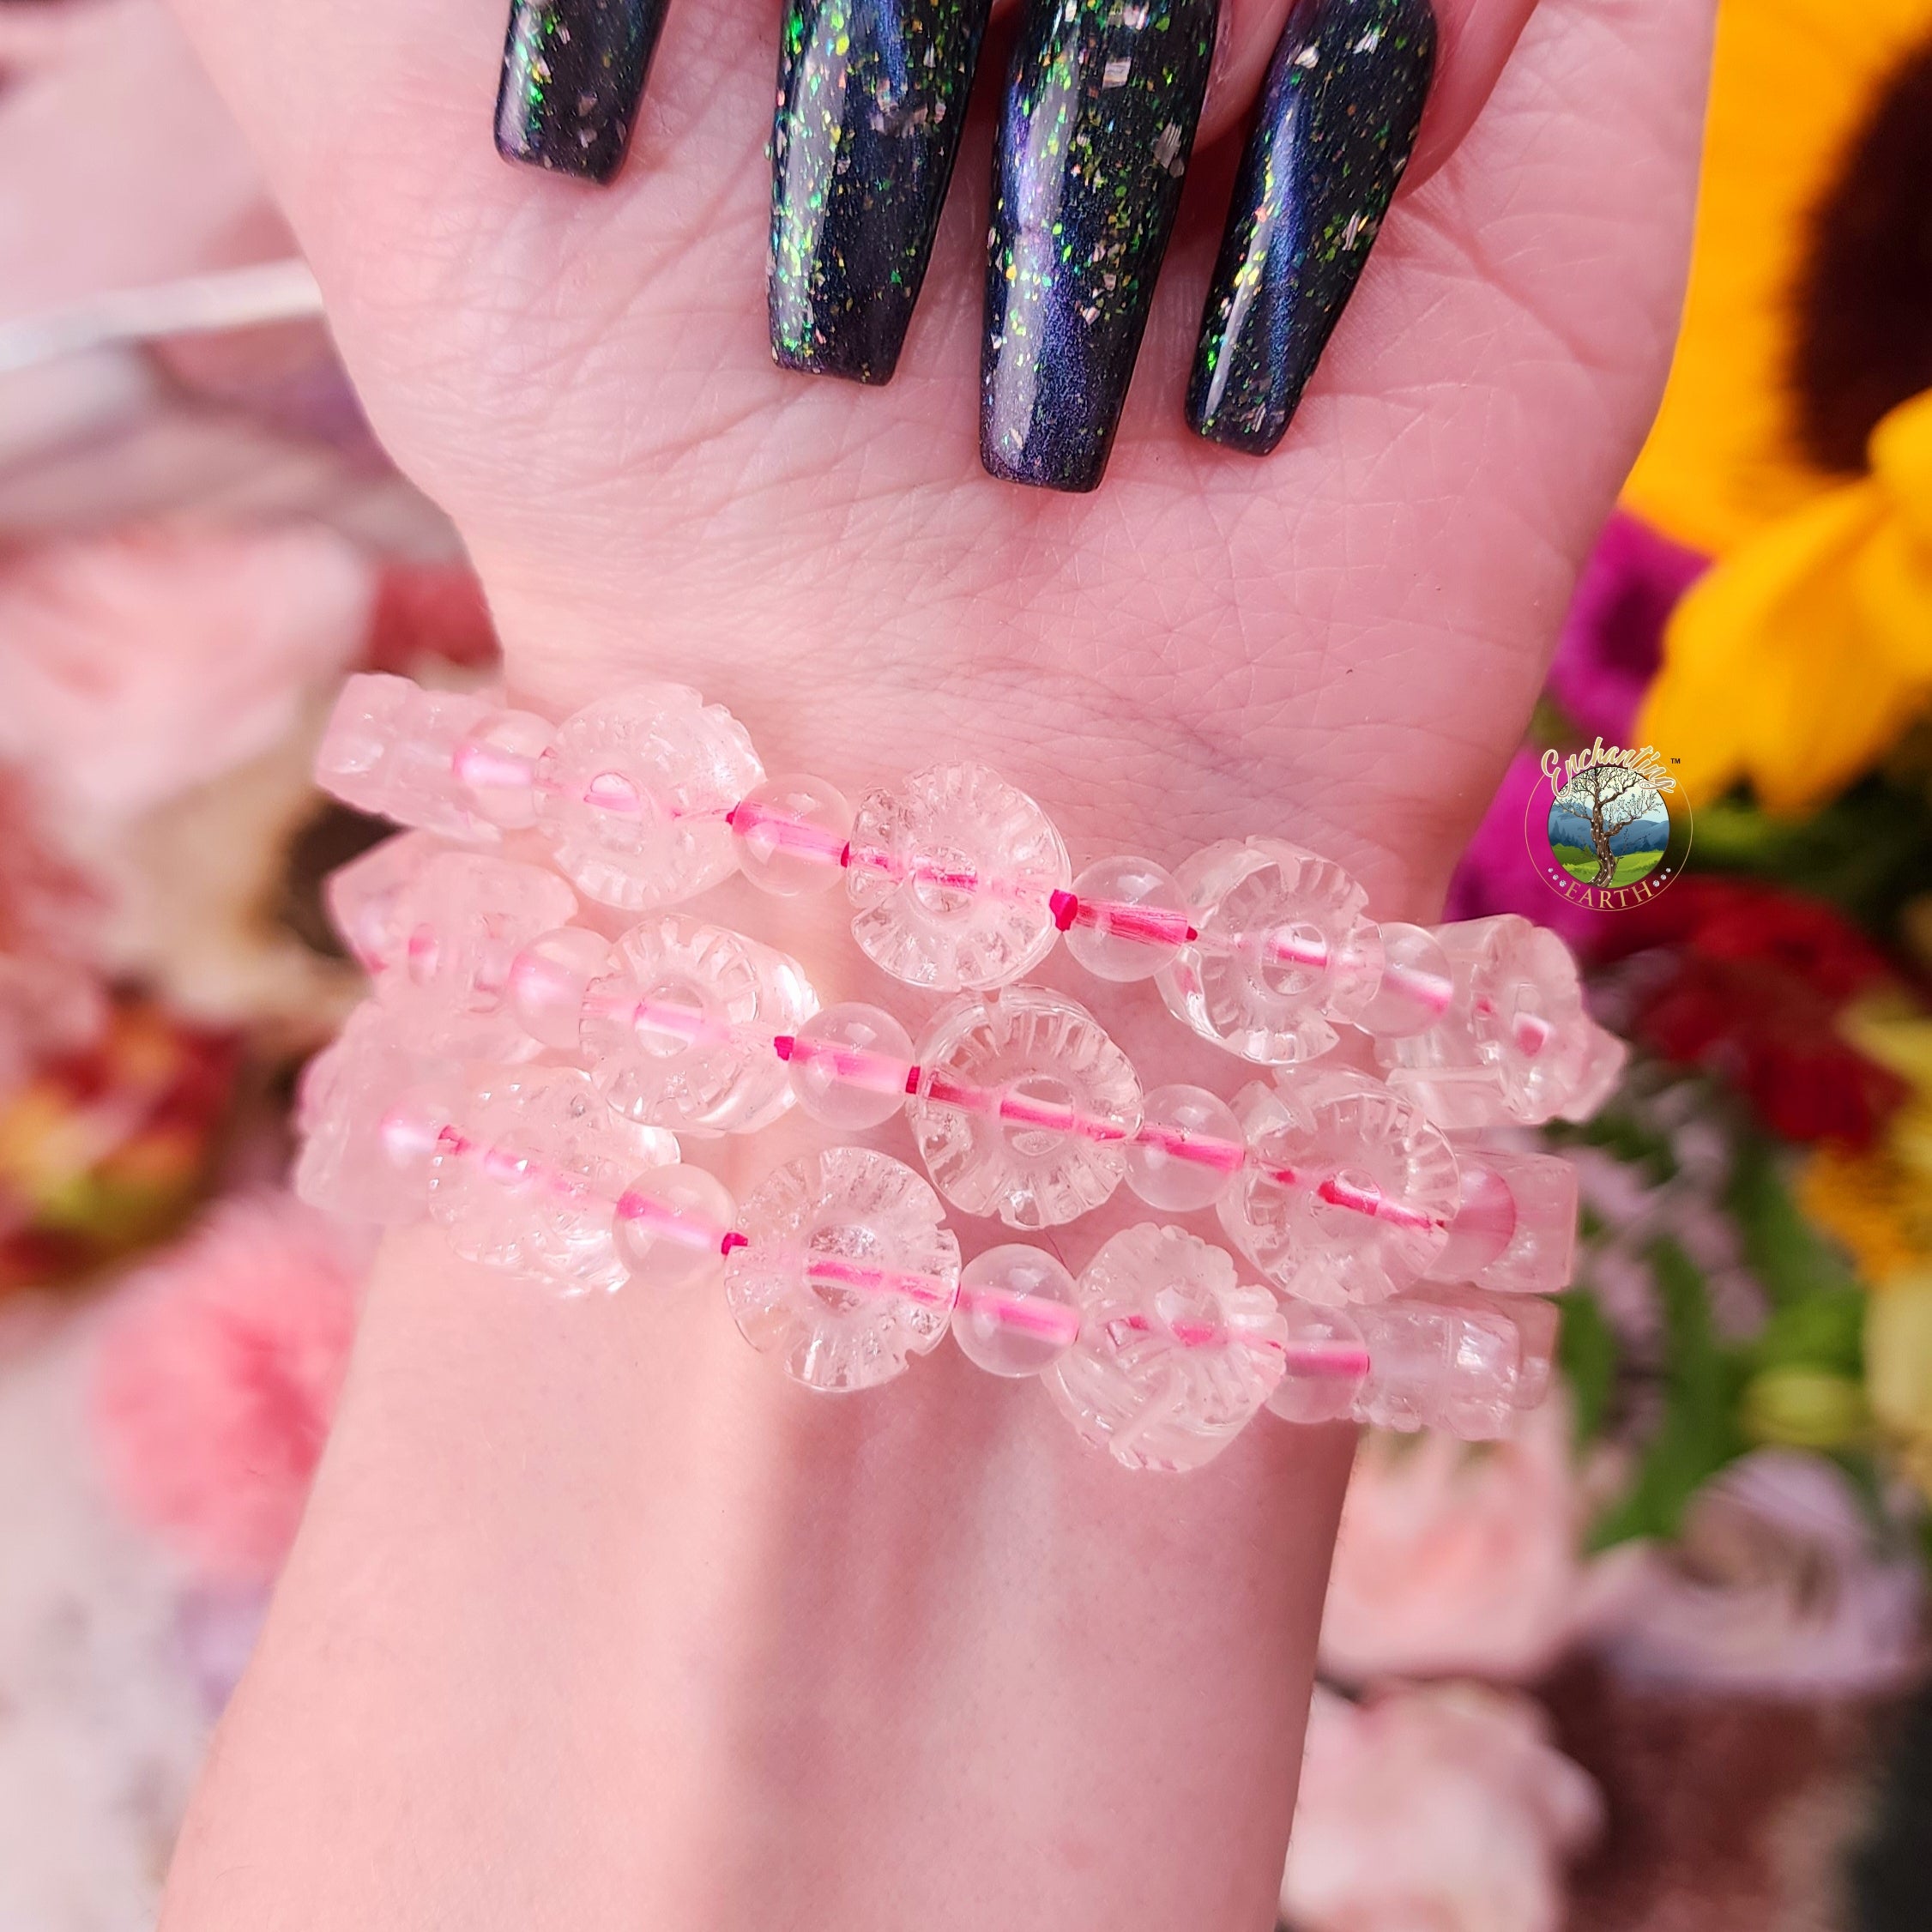 Rose Quartz Flower Power Bracelet for Opening Your Heart to Love